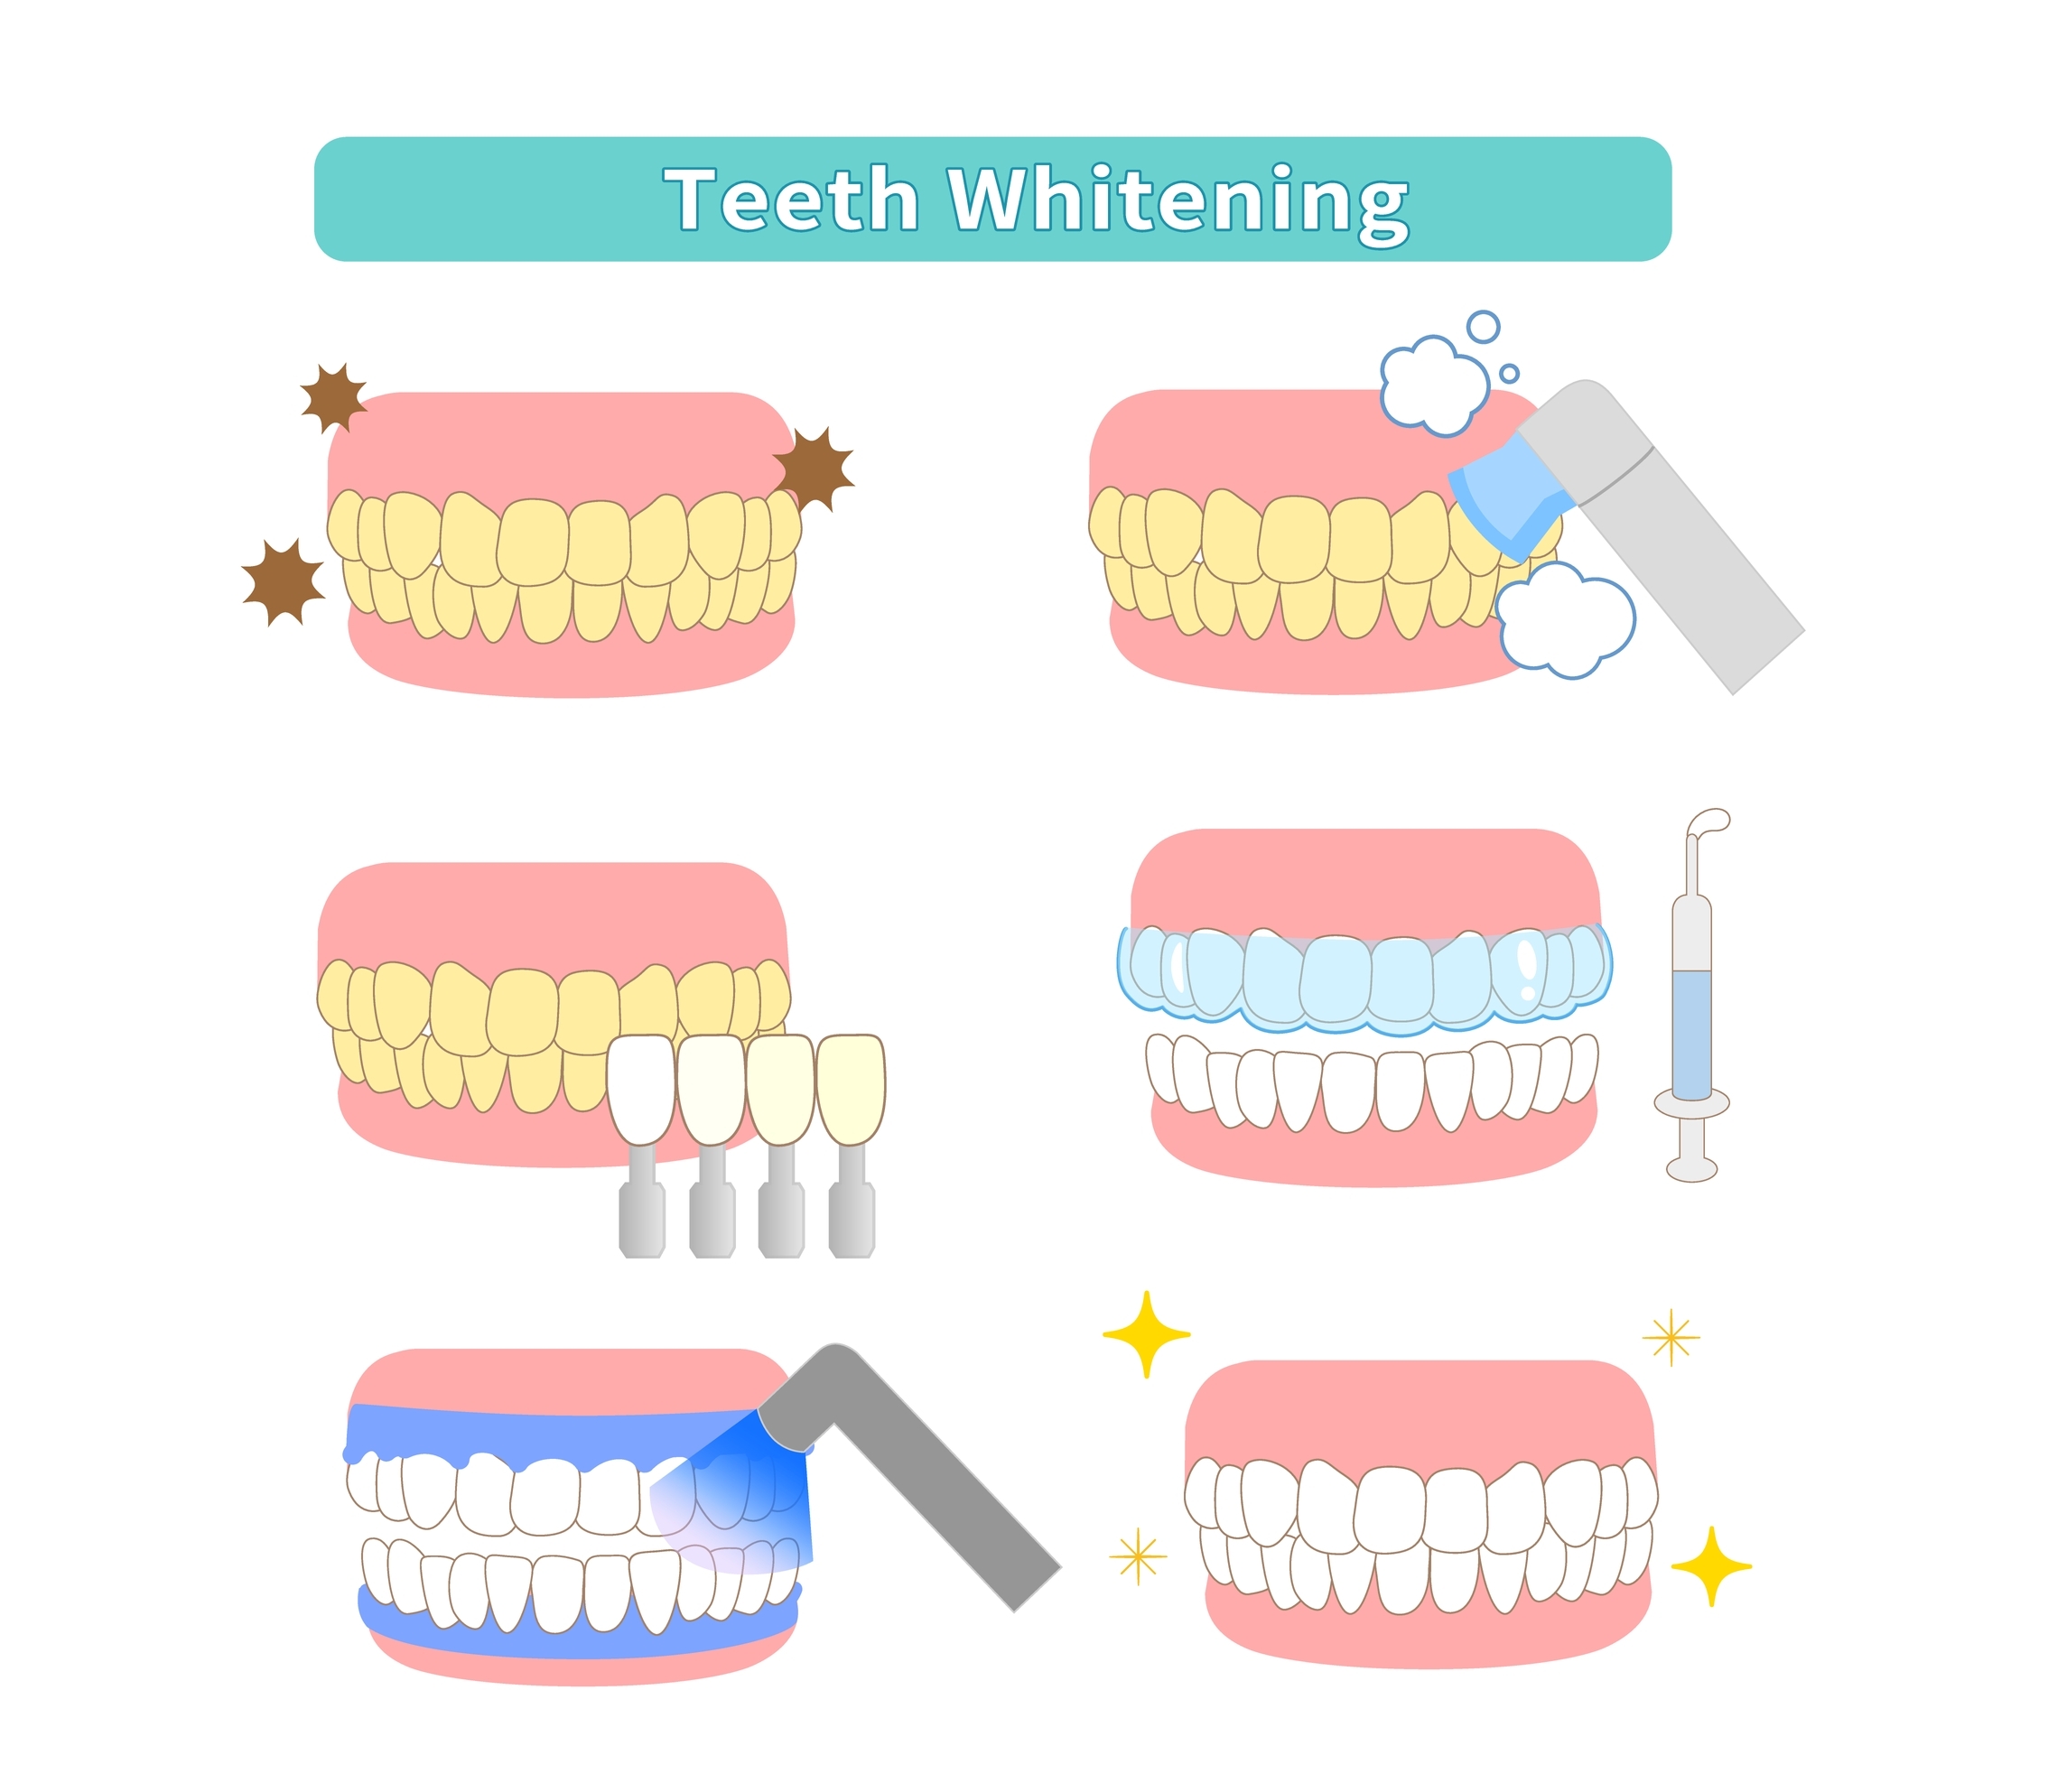 steps of teeth whitening procedure